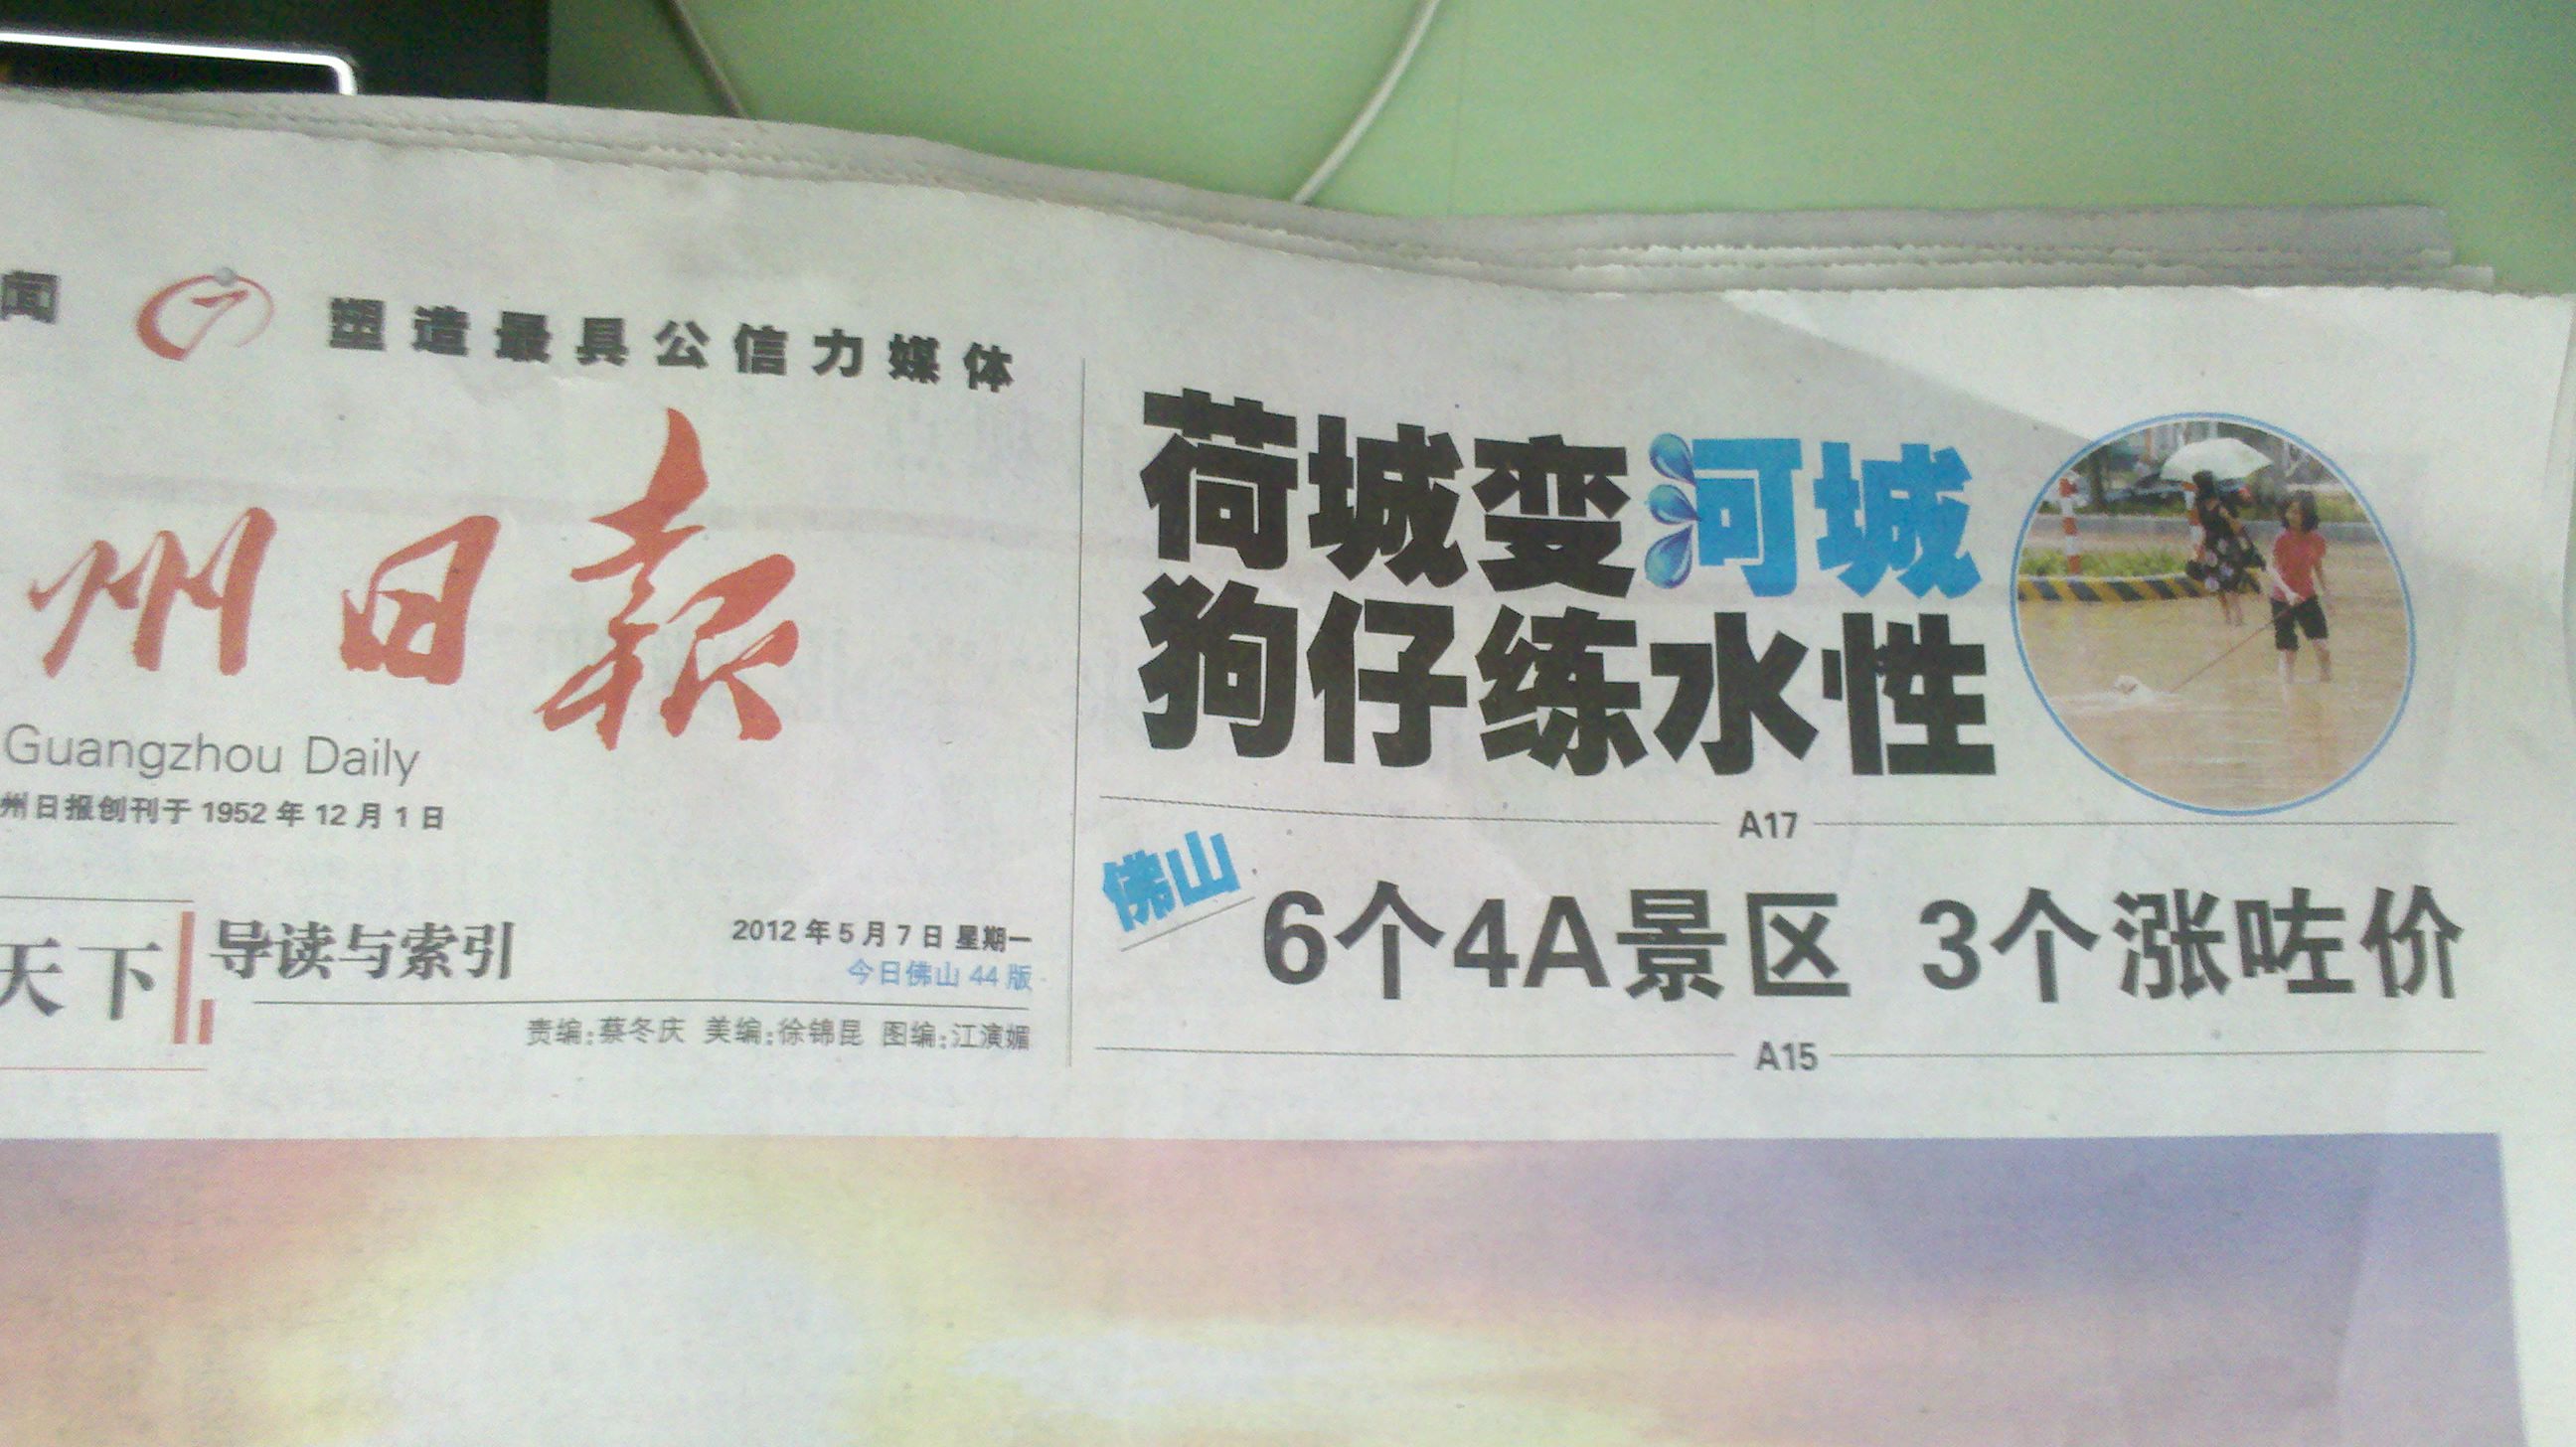 2012年5月7日《广州日报》头条荷城变河城